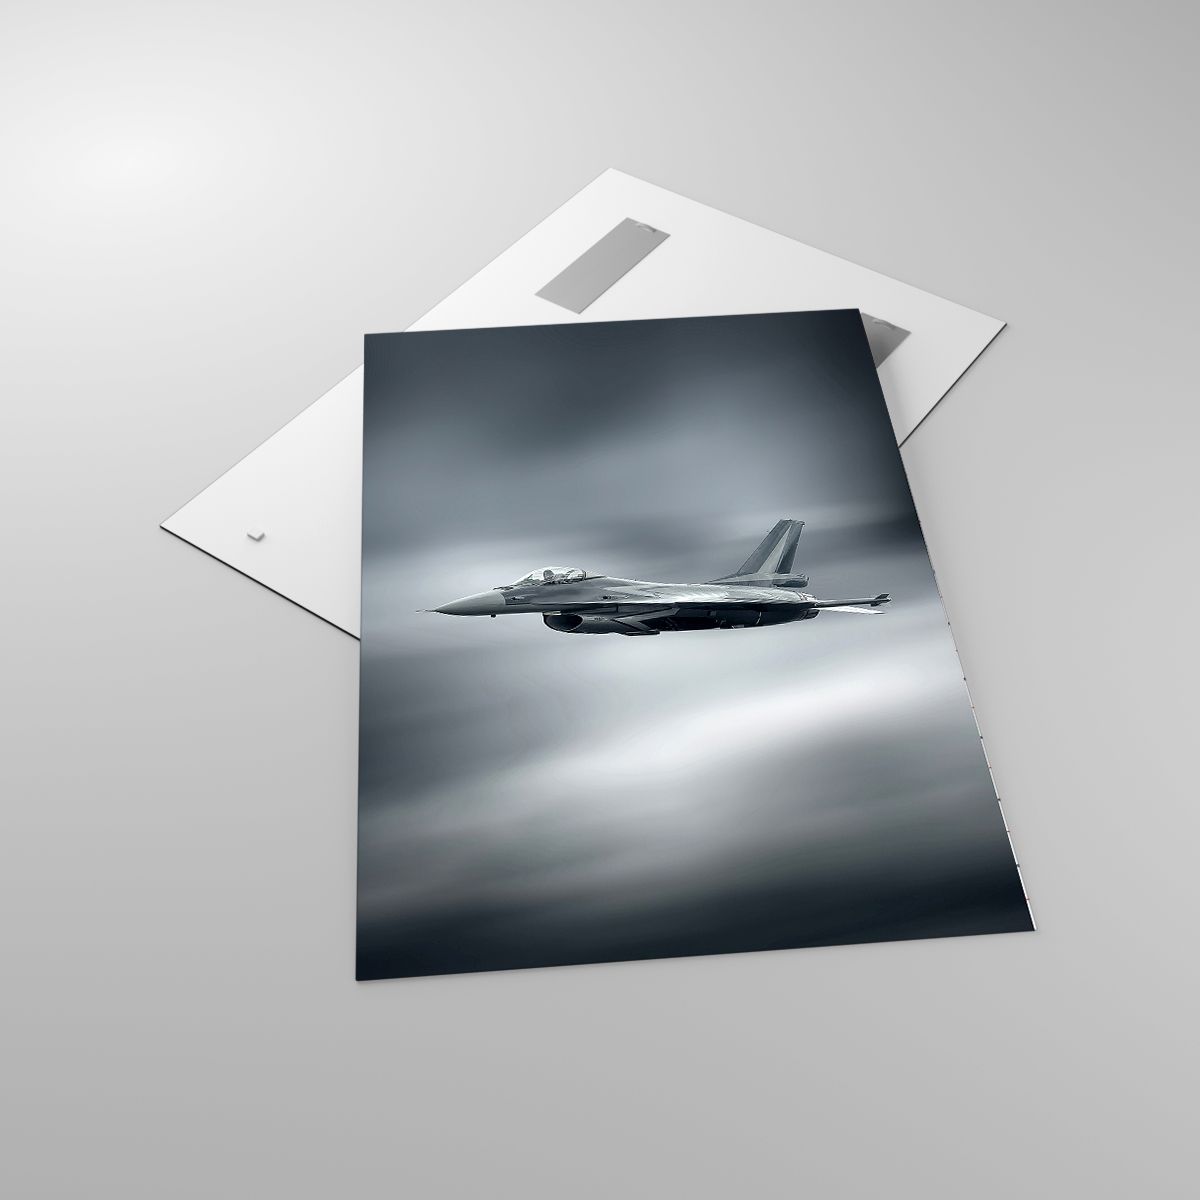 Glasbild Kampfflugzeug, Glasbild Militärflugzeug, Glasbild Jet, Glasbild Flugzeug, Glasbild Heer